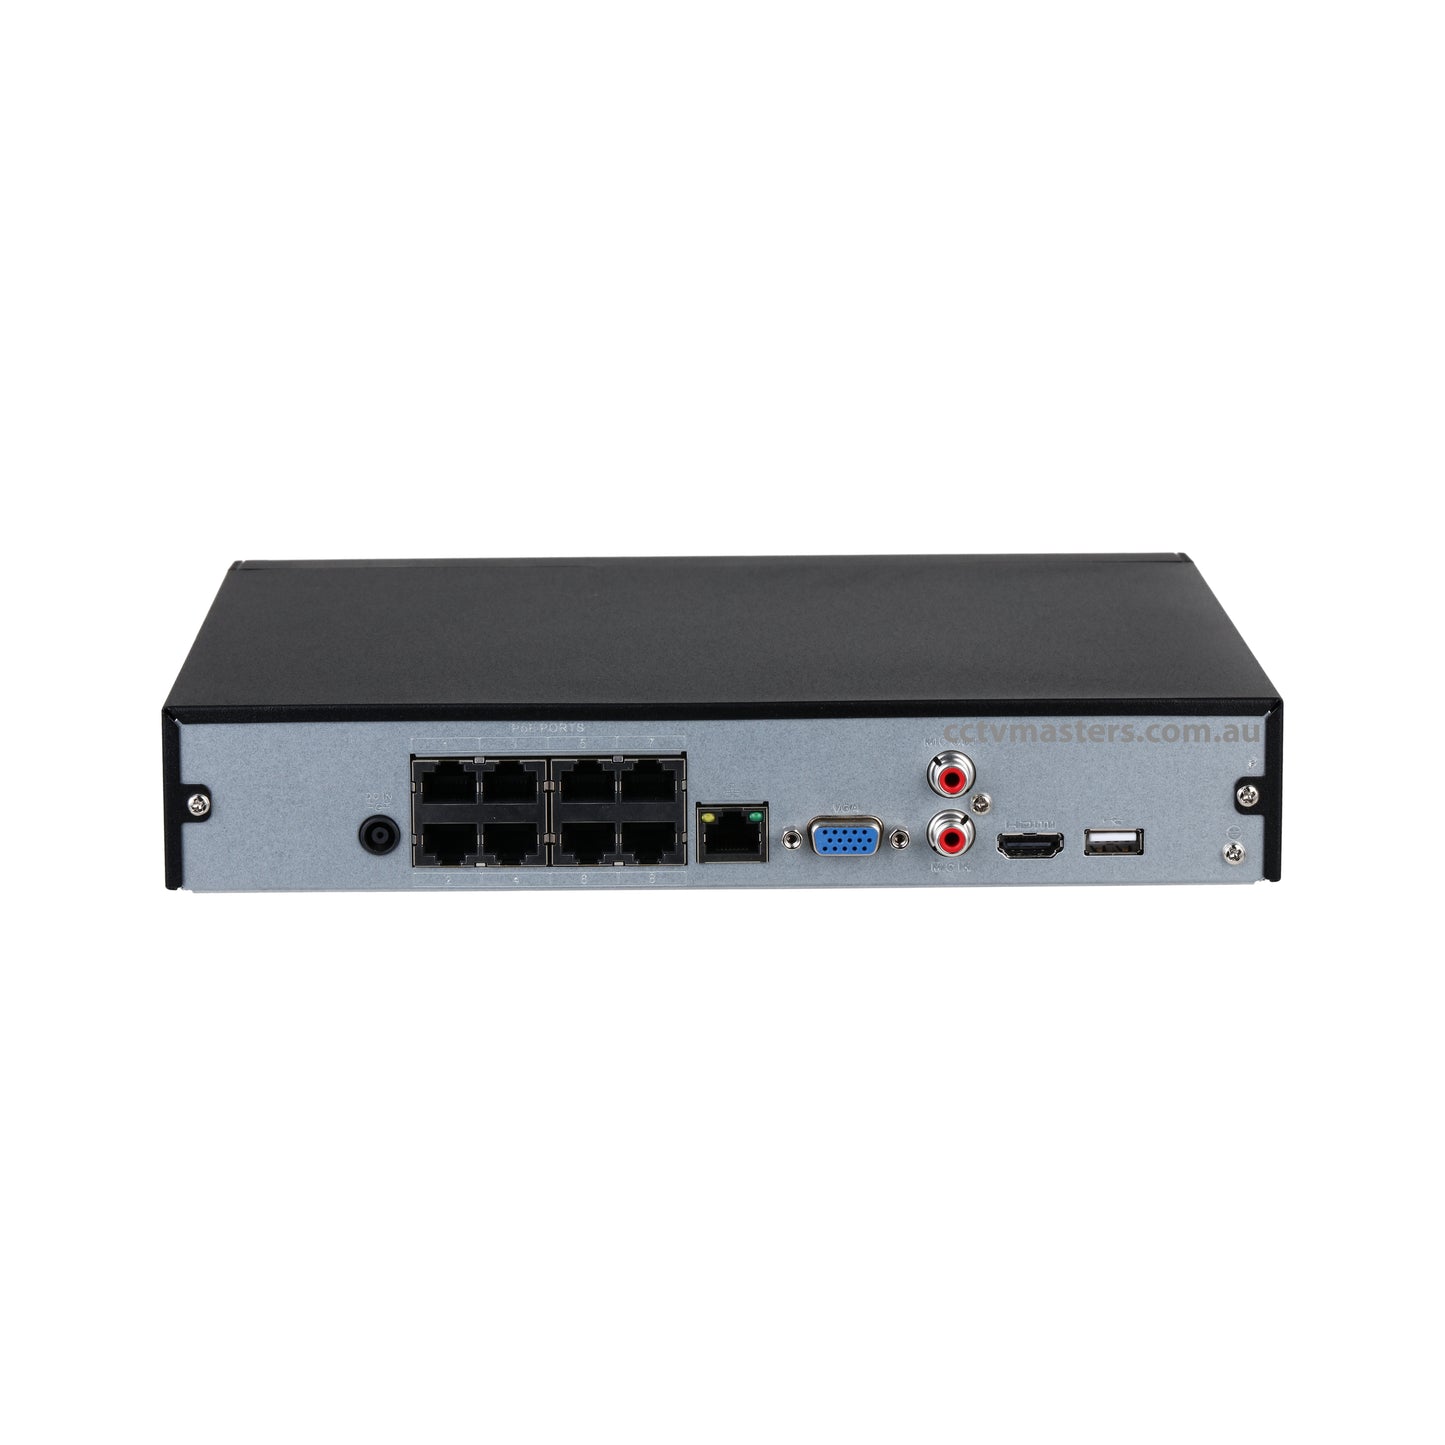 Dahua 8Ch NVR, DHI-NVR4108HS-8P-4KS2/L, 8Ch Ultra 4K Network Video Recorder